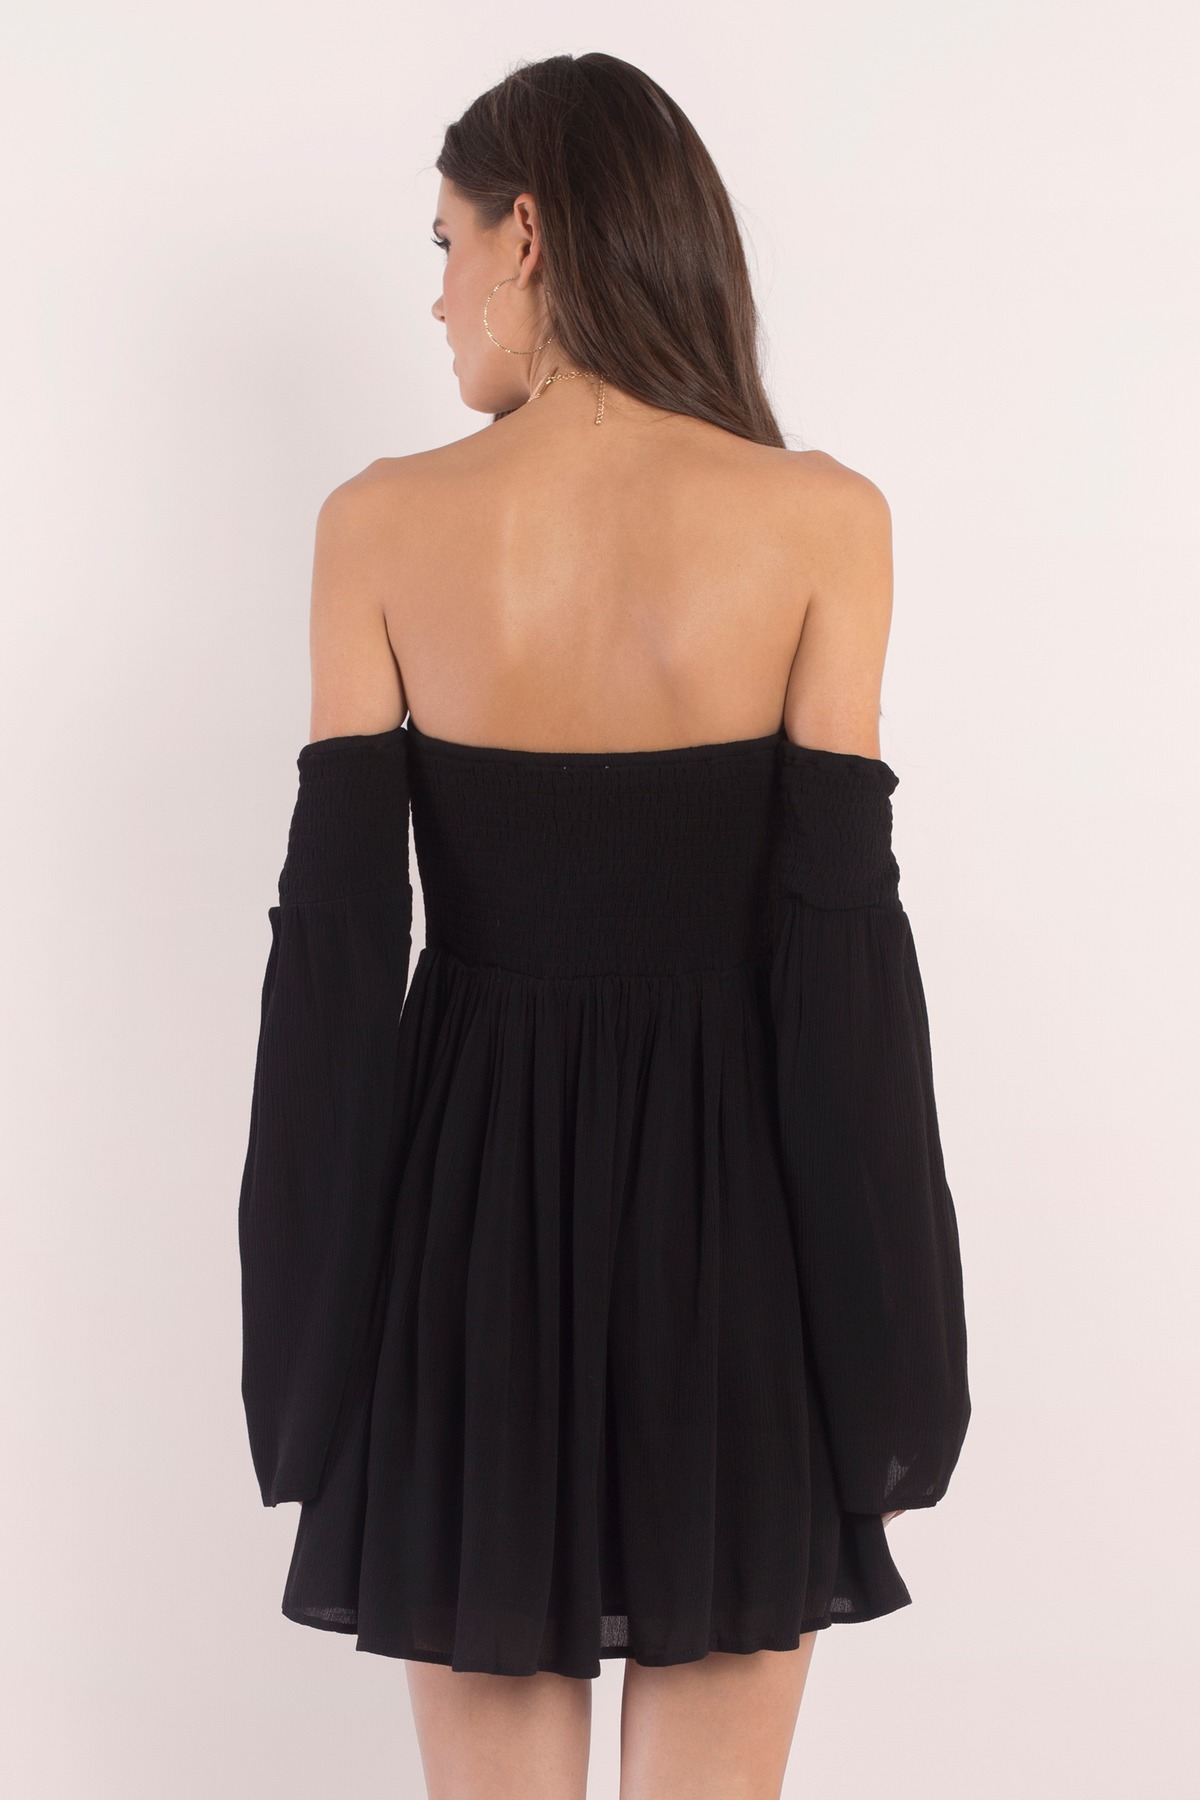 Black Skater Dress - Off Shoulder Dress - Black Long Sleeve Dress